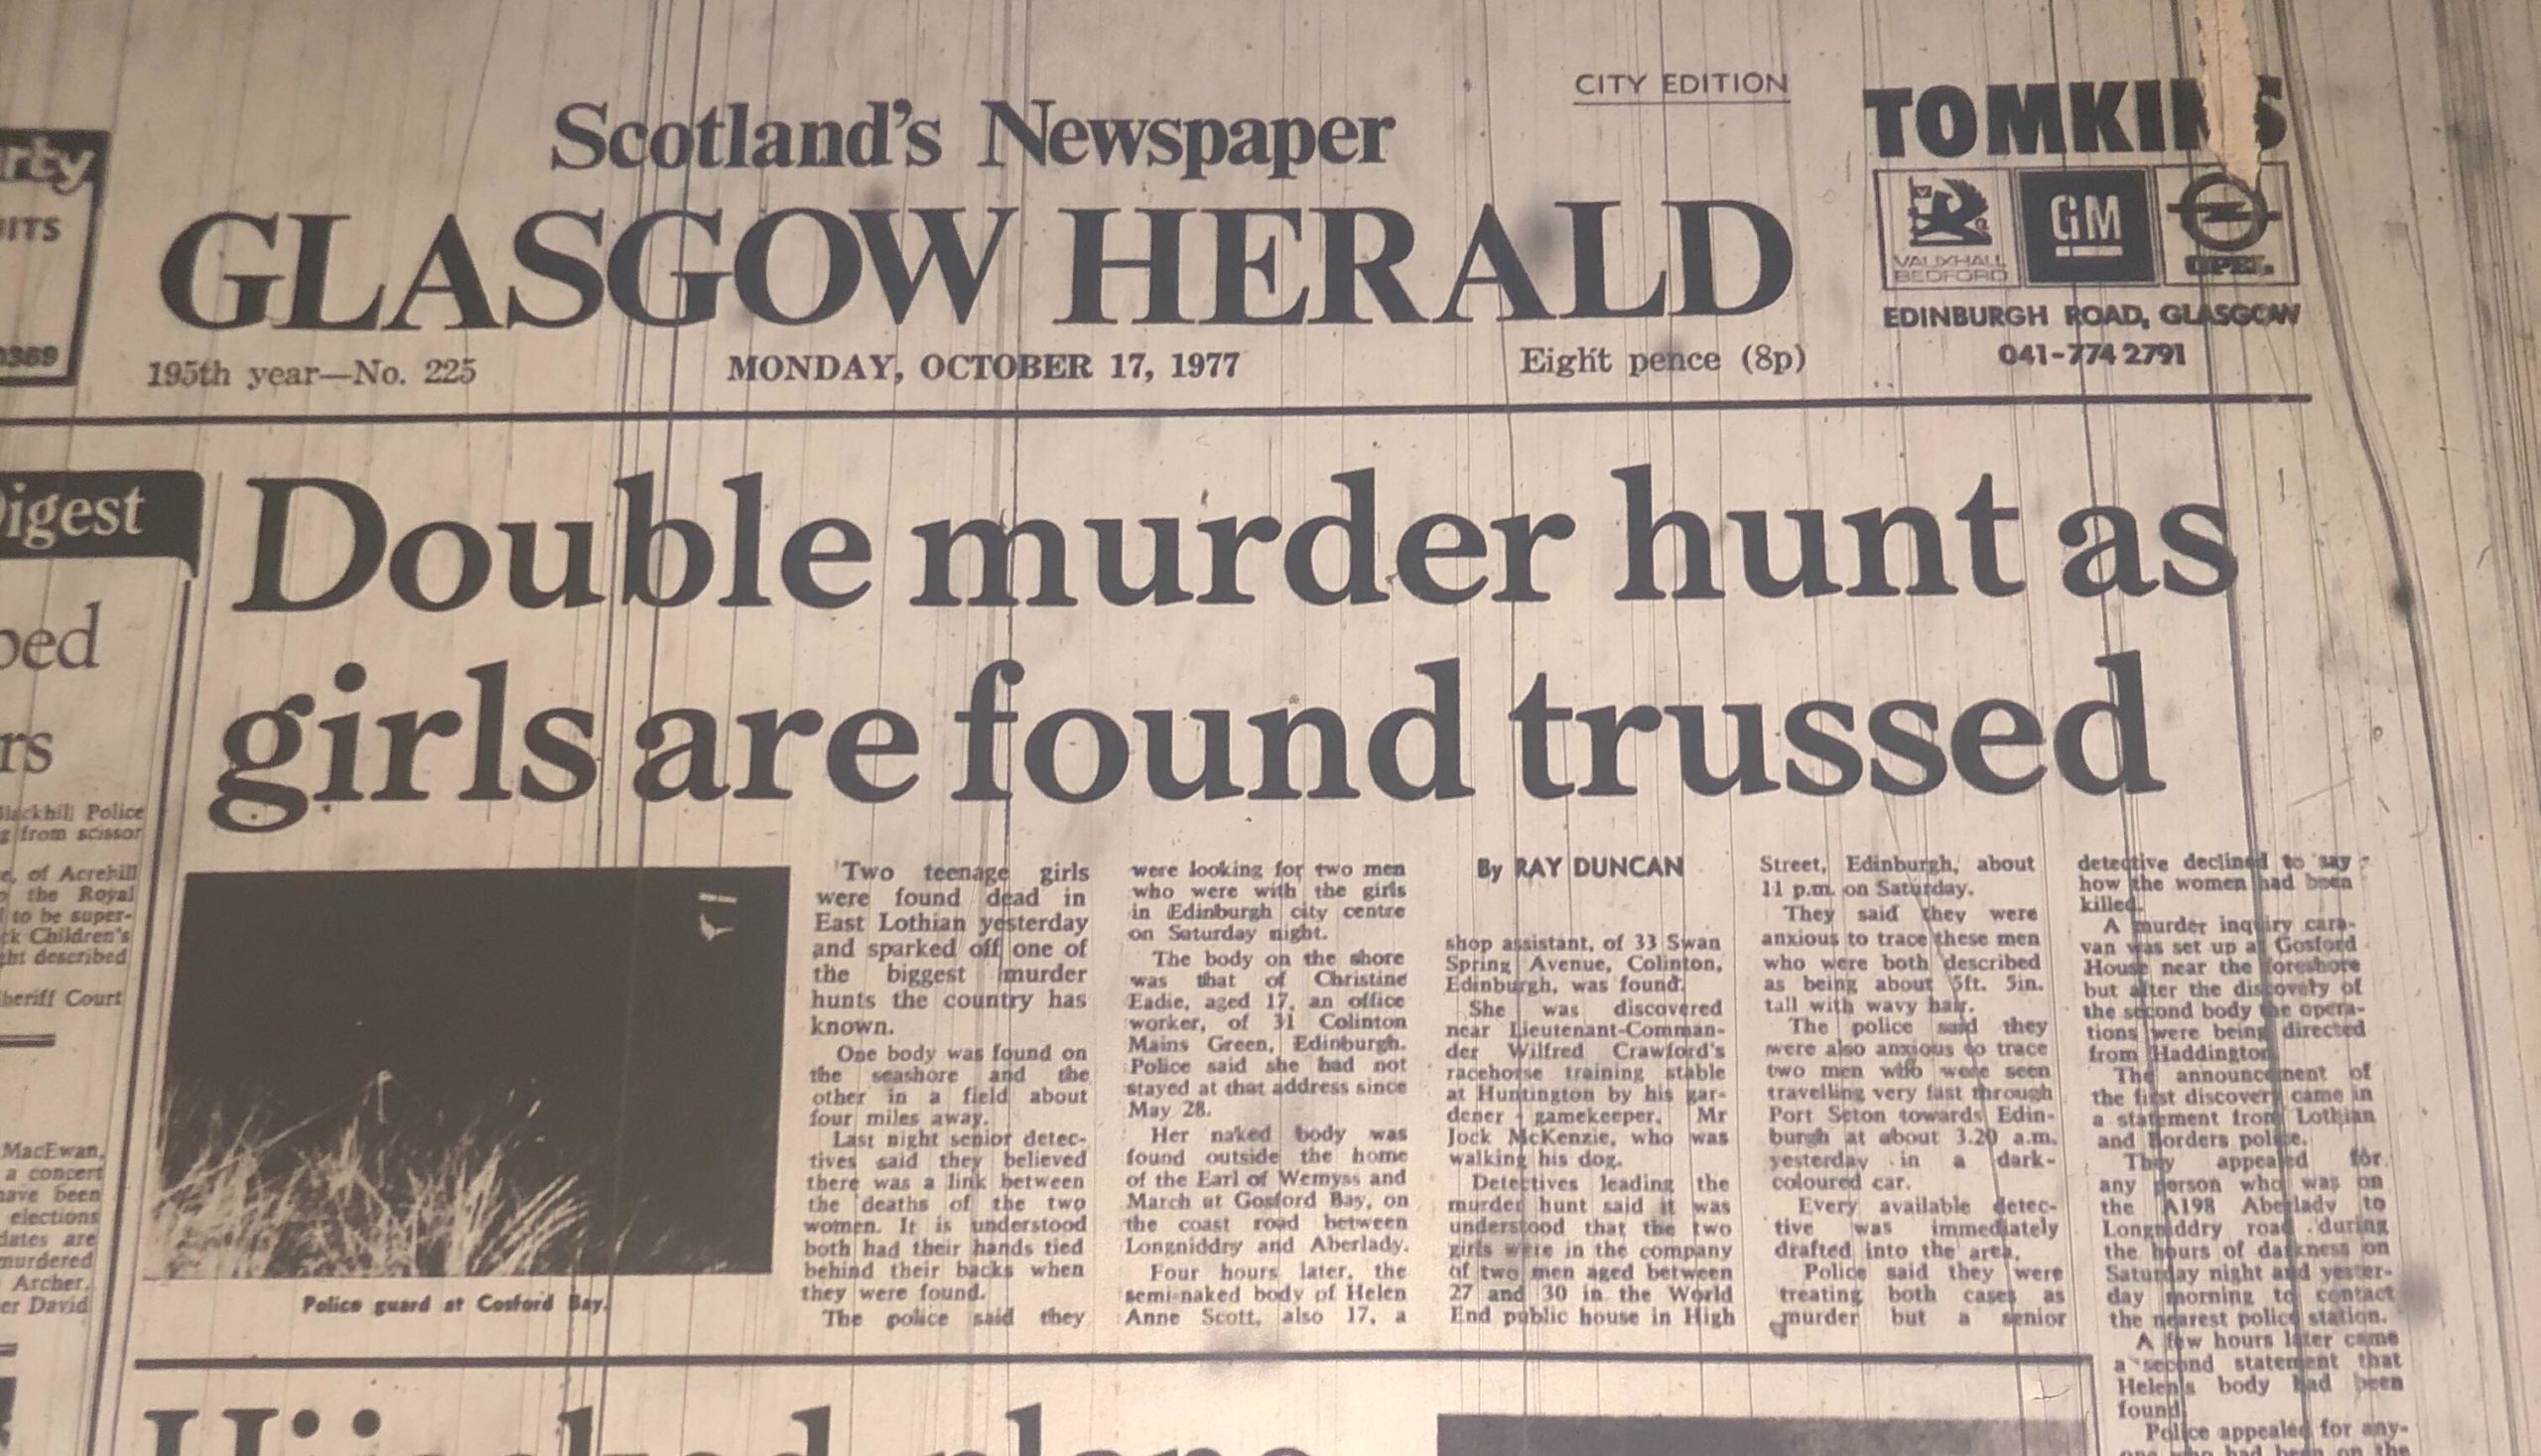 Sinclair murdered Helen Scott and Christine Eadie in 1977.